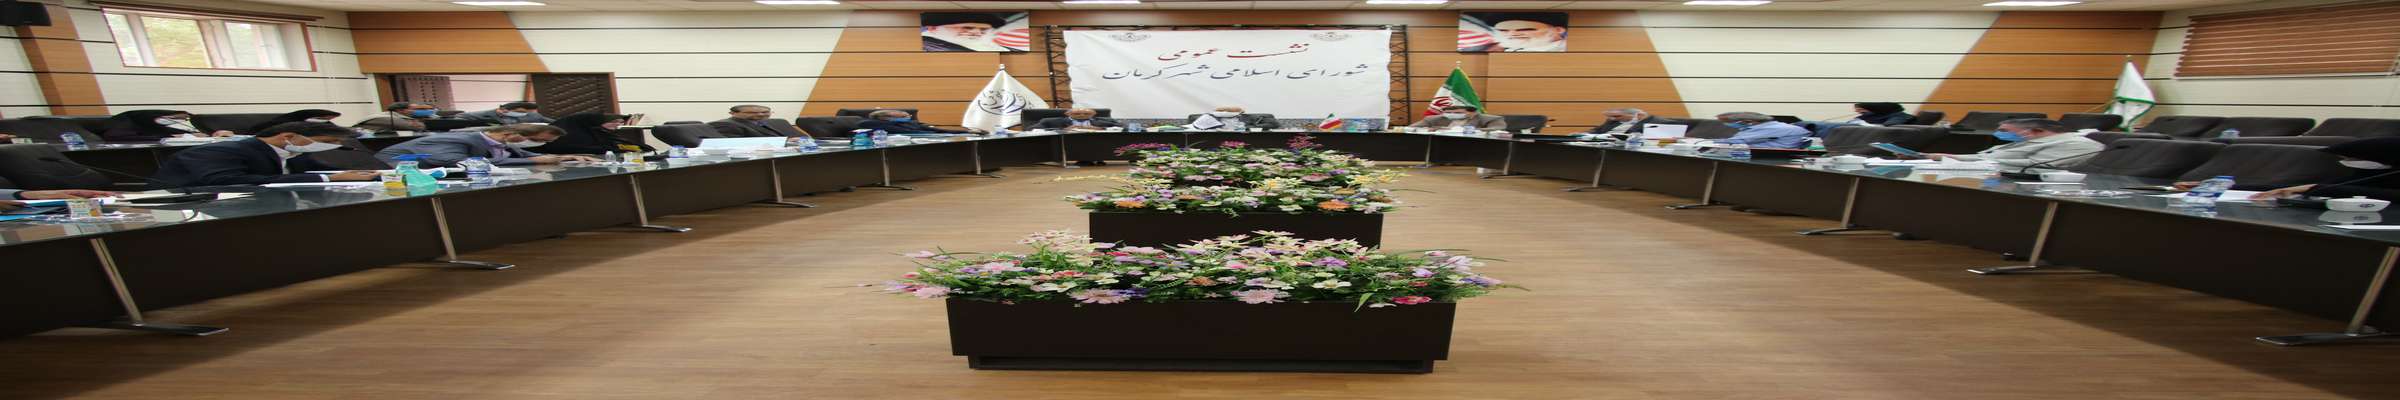 برگزاری رویداد «صدسالگی شهرداری» کرمان، پدیده ای مبارک و فرصتی مناسب برای شهر کرمان است